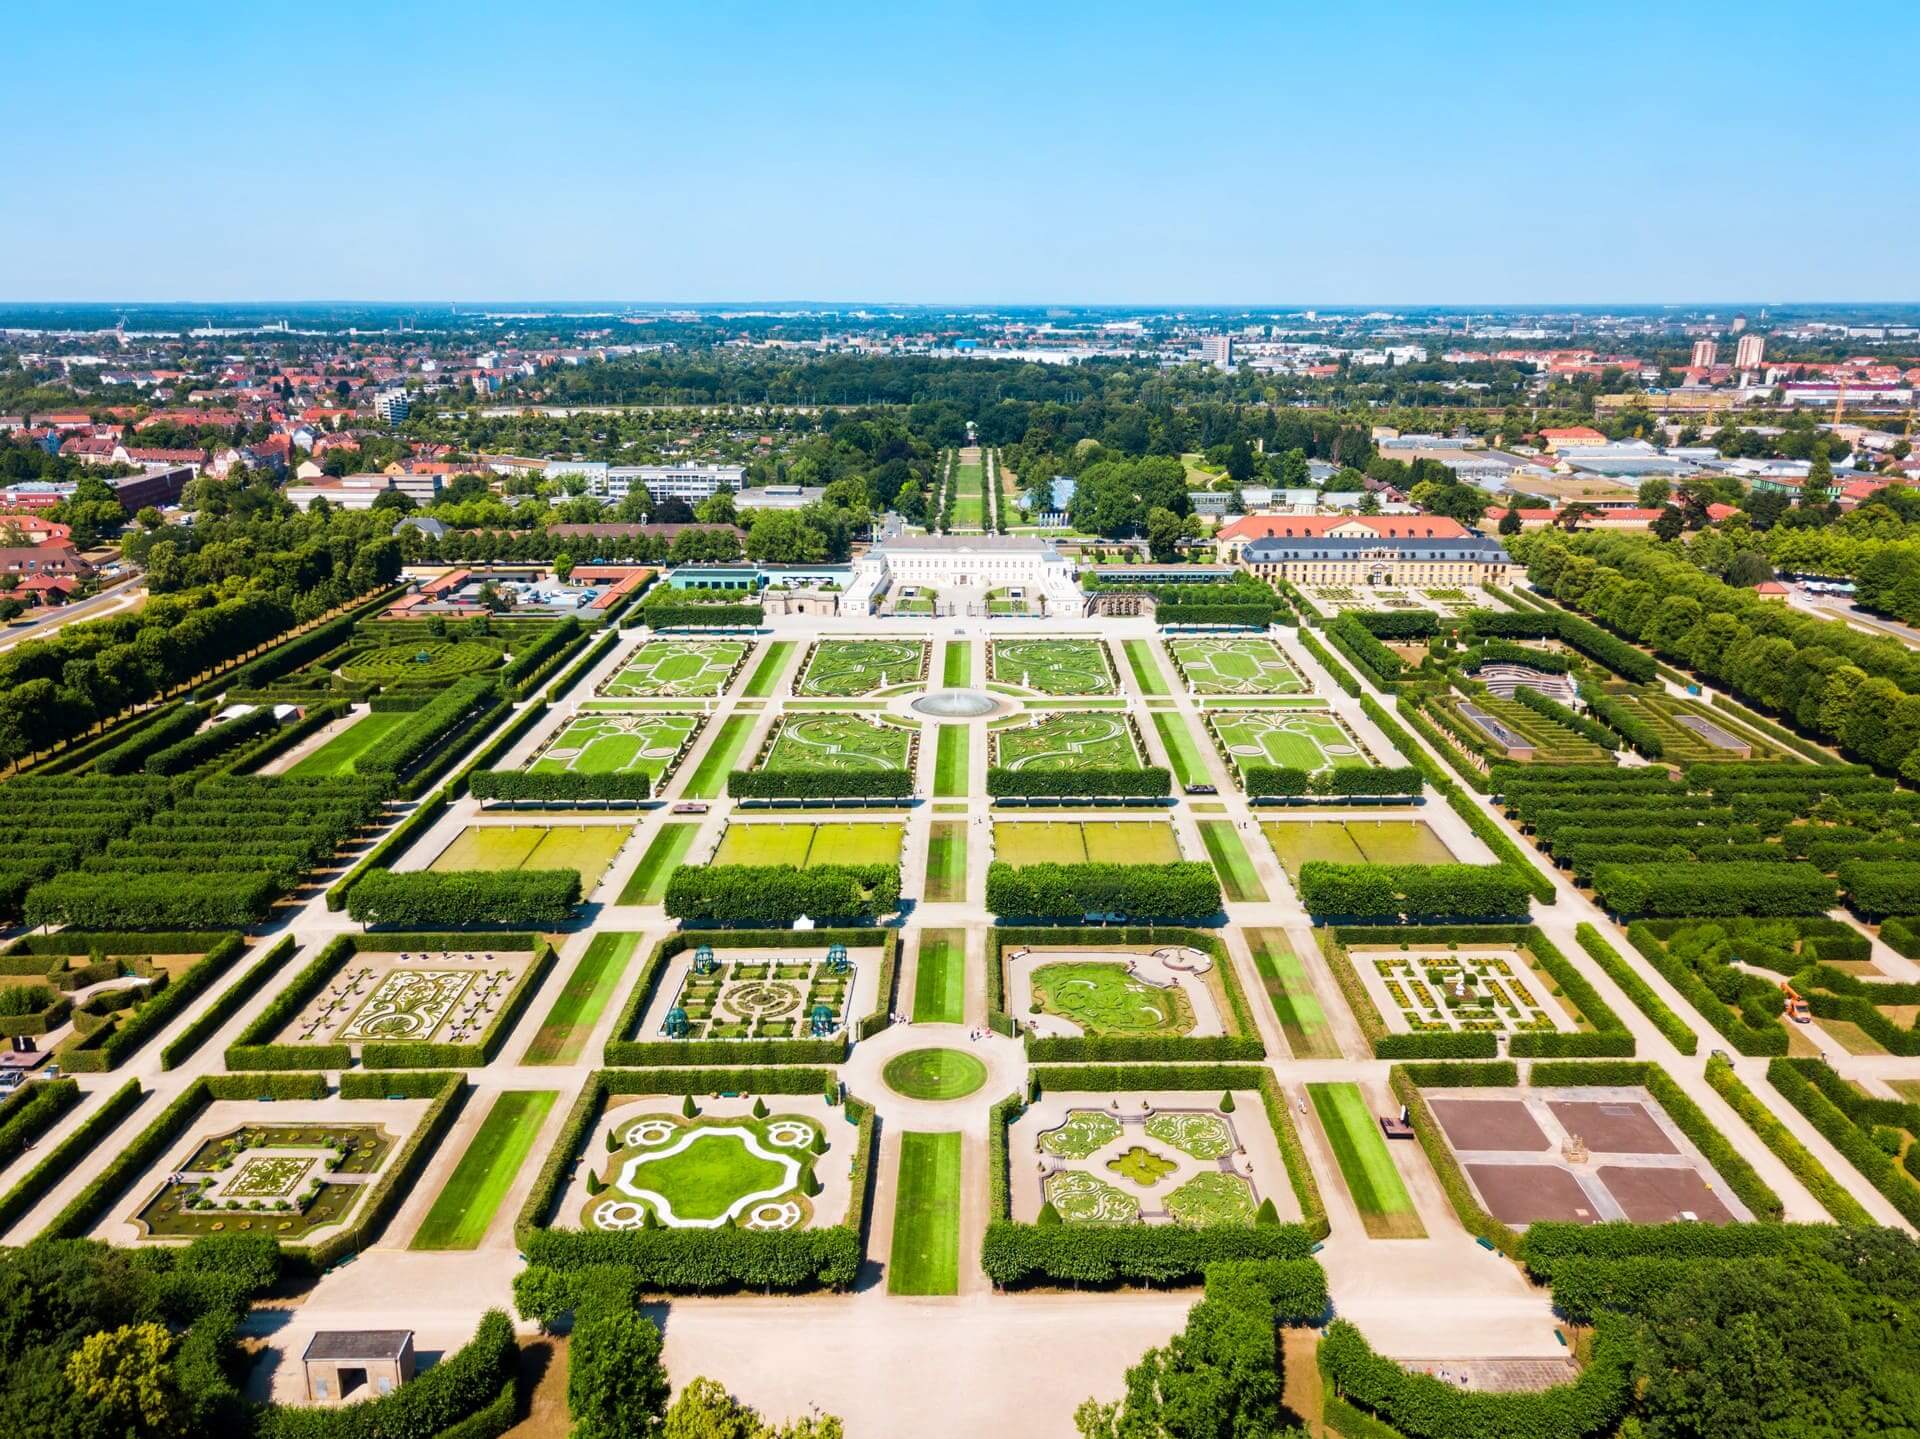 Сады Херренхаузен дворца Херренхаузен, расположенного в Ганновере, Германия